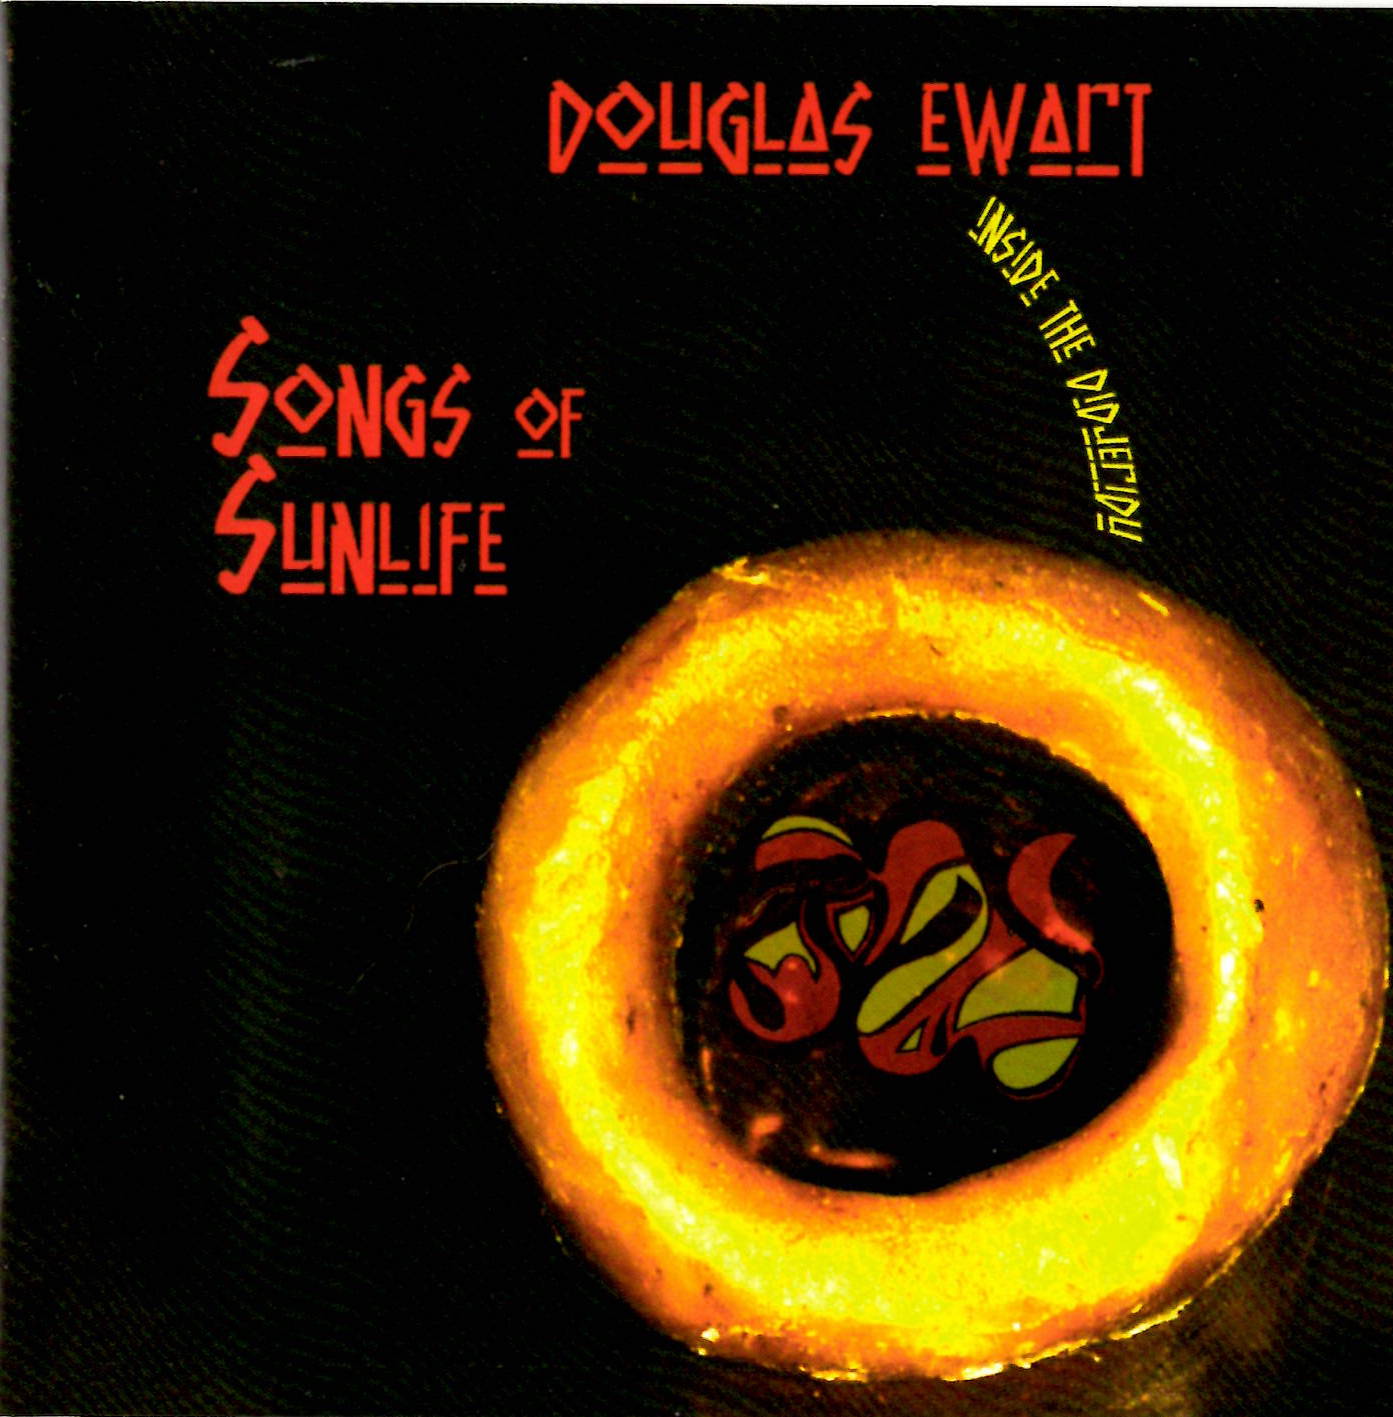 Douglas Ewart